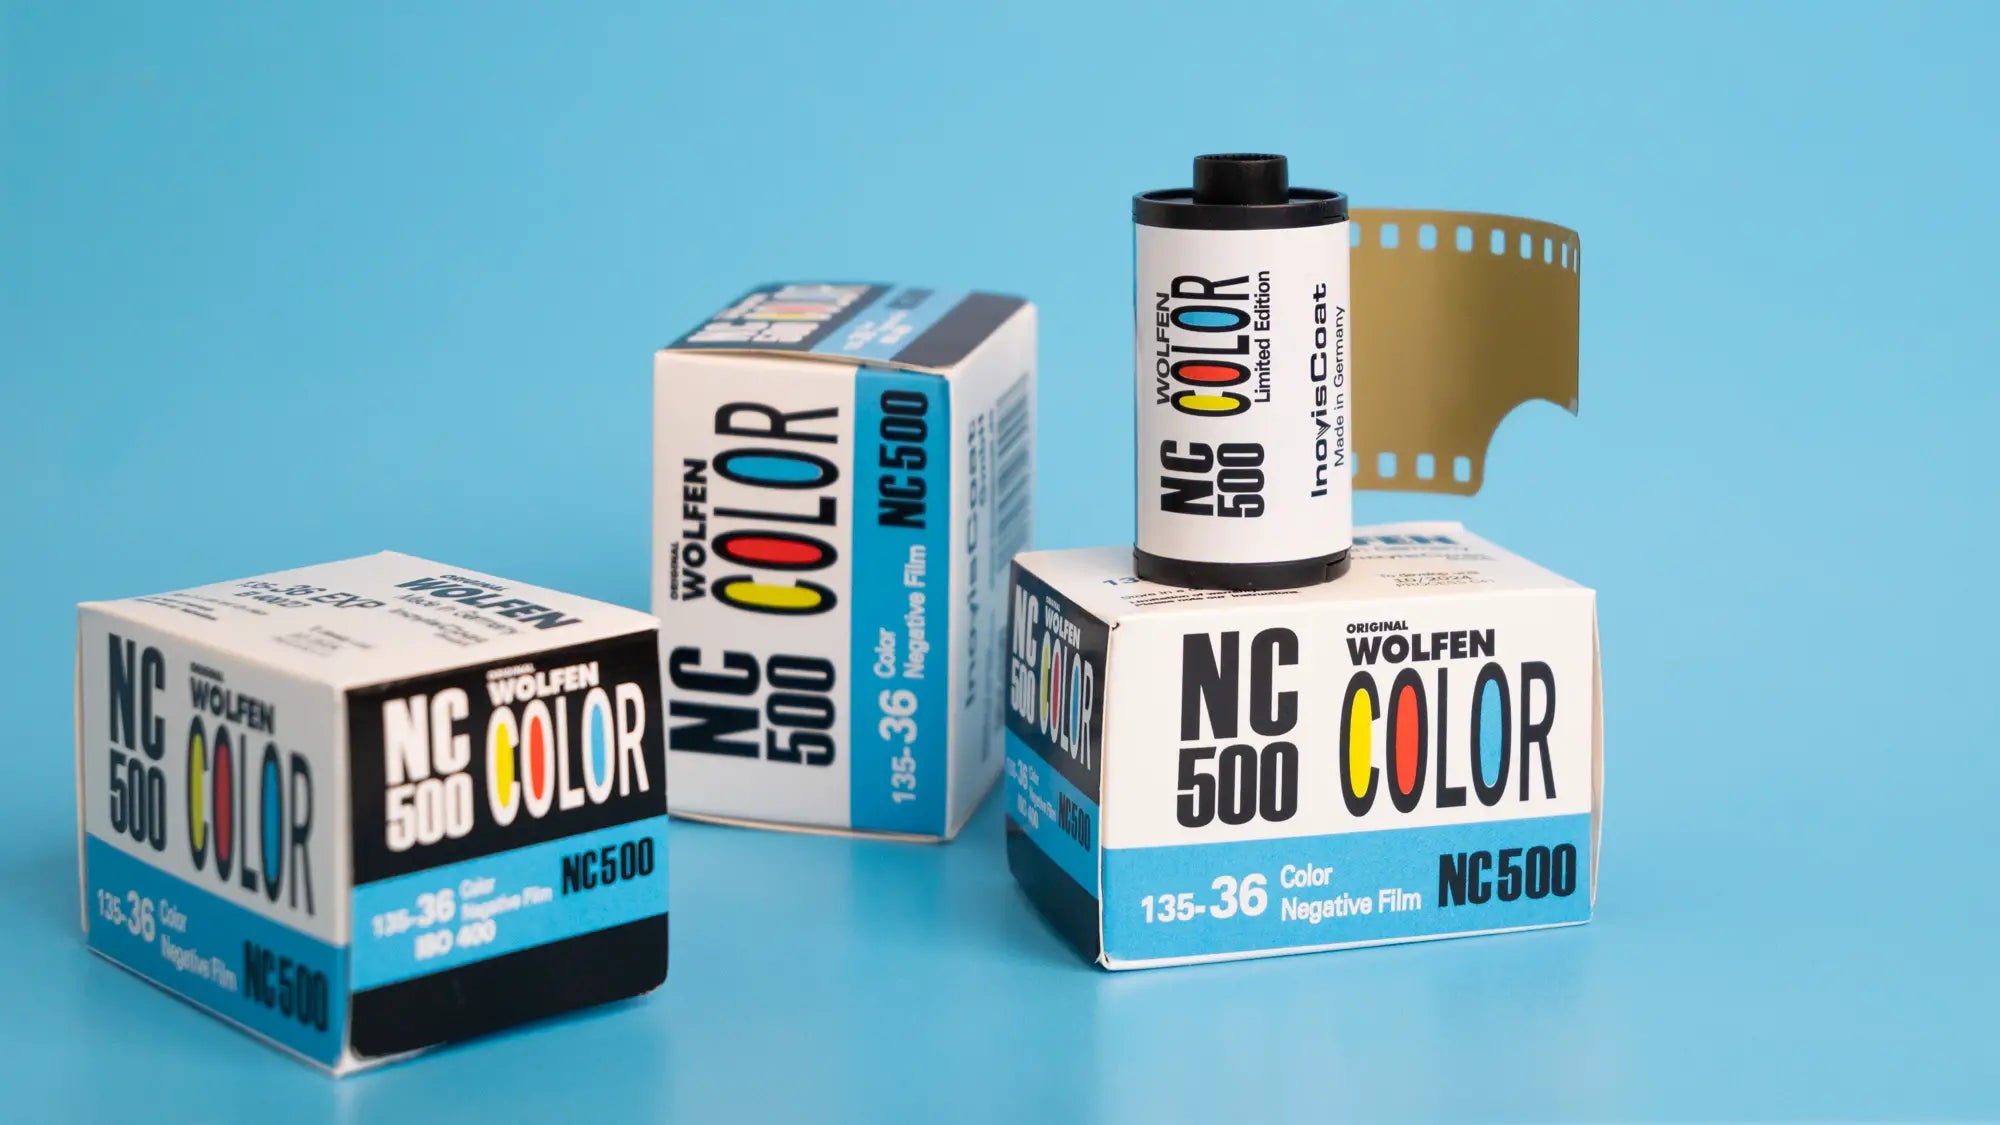 Wolfen Nc500 35mm film